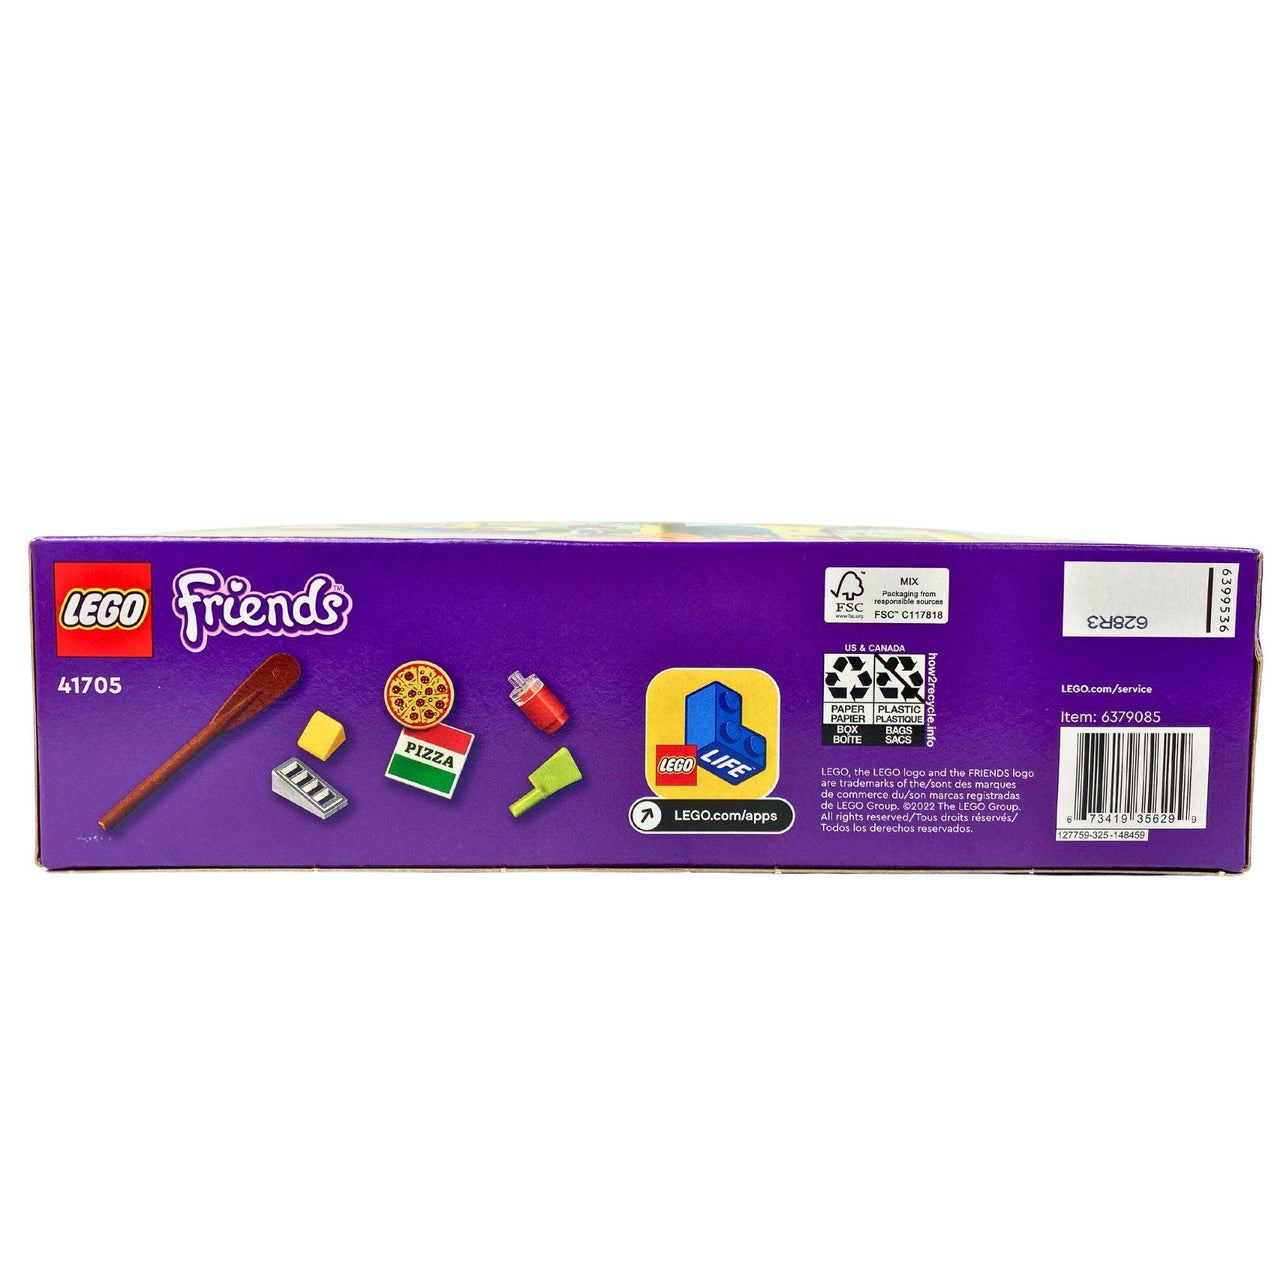 LEGO Friends 5+ 41705 Heartlake City Pizzeria 144 Pcs Building Toy (60 Pcs Lot) - Discount Wholesalers Inc